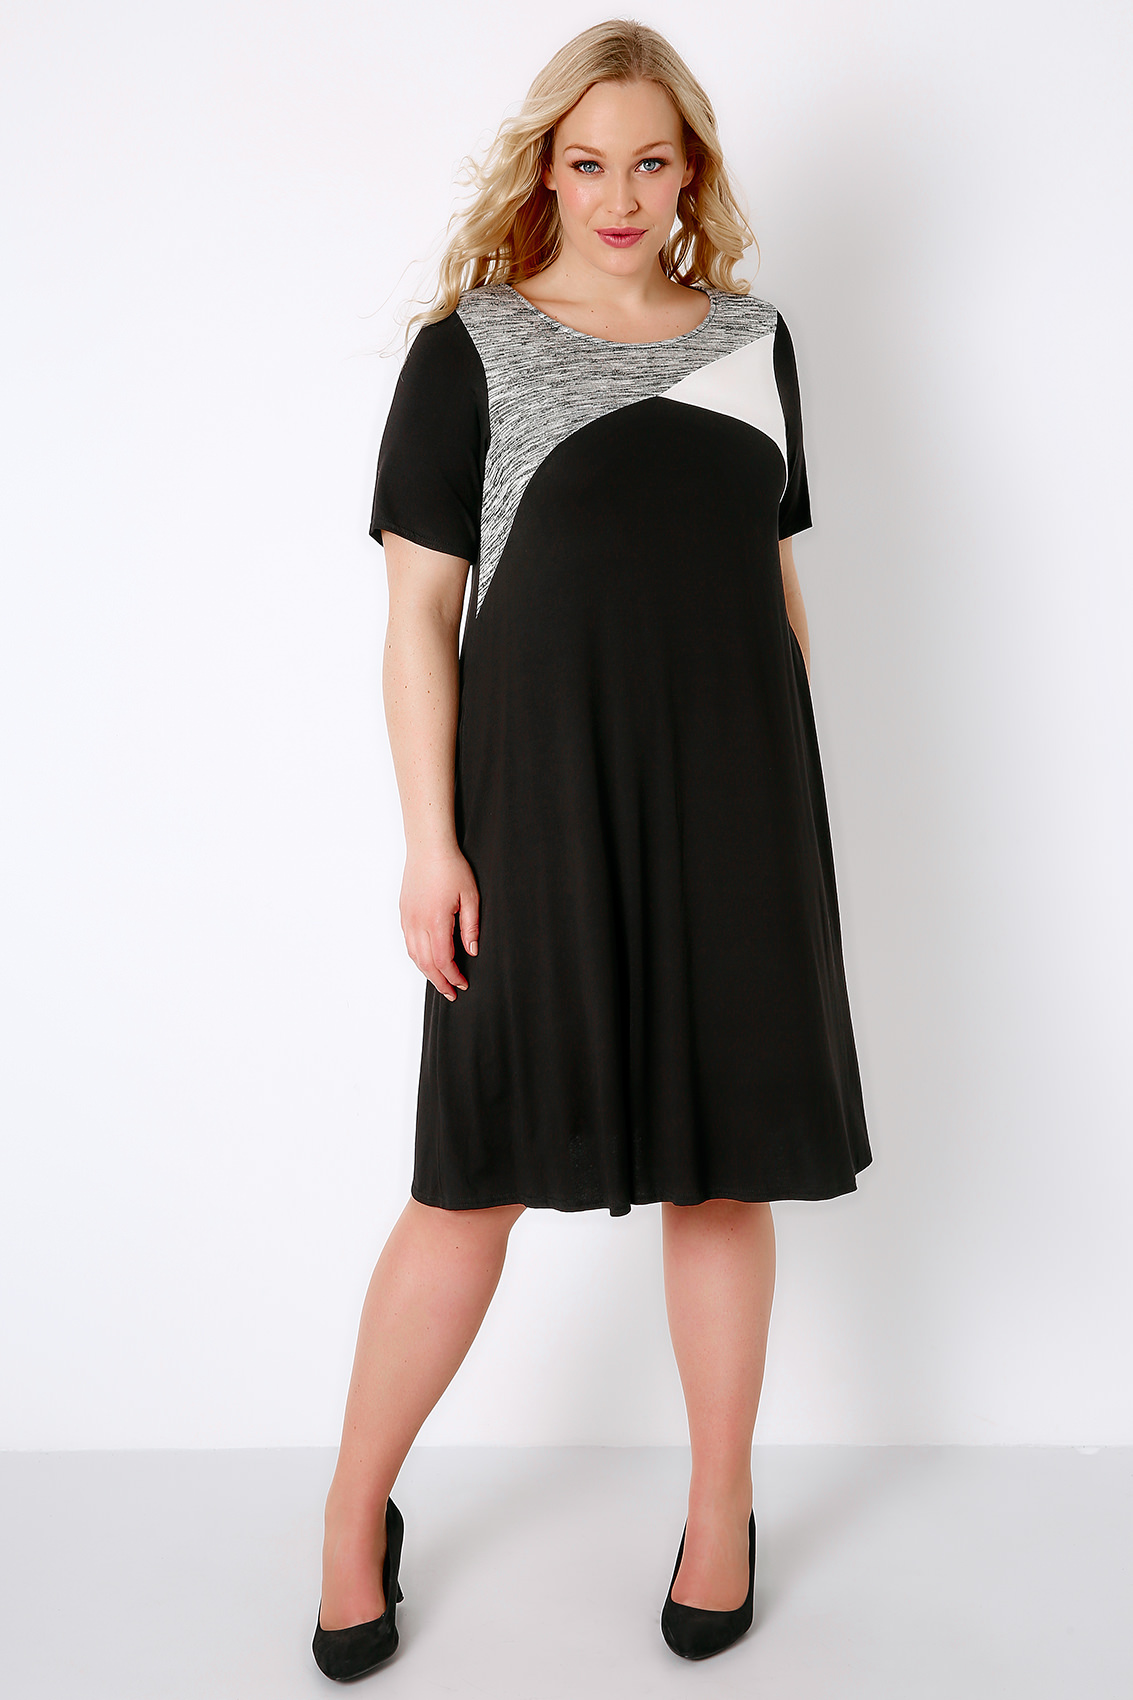 Black, White & Grey Colour Block Tunic Dress, Plus size 16 to 36